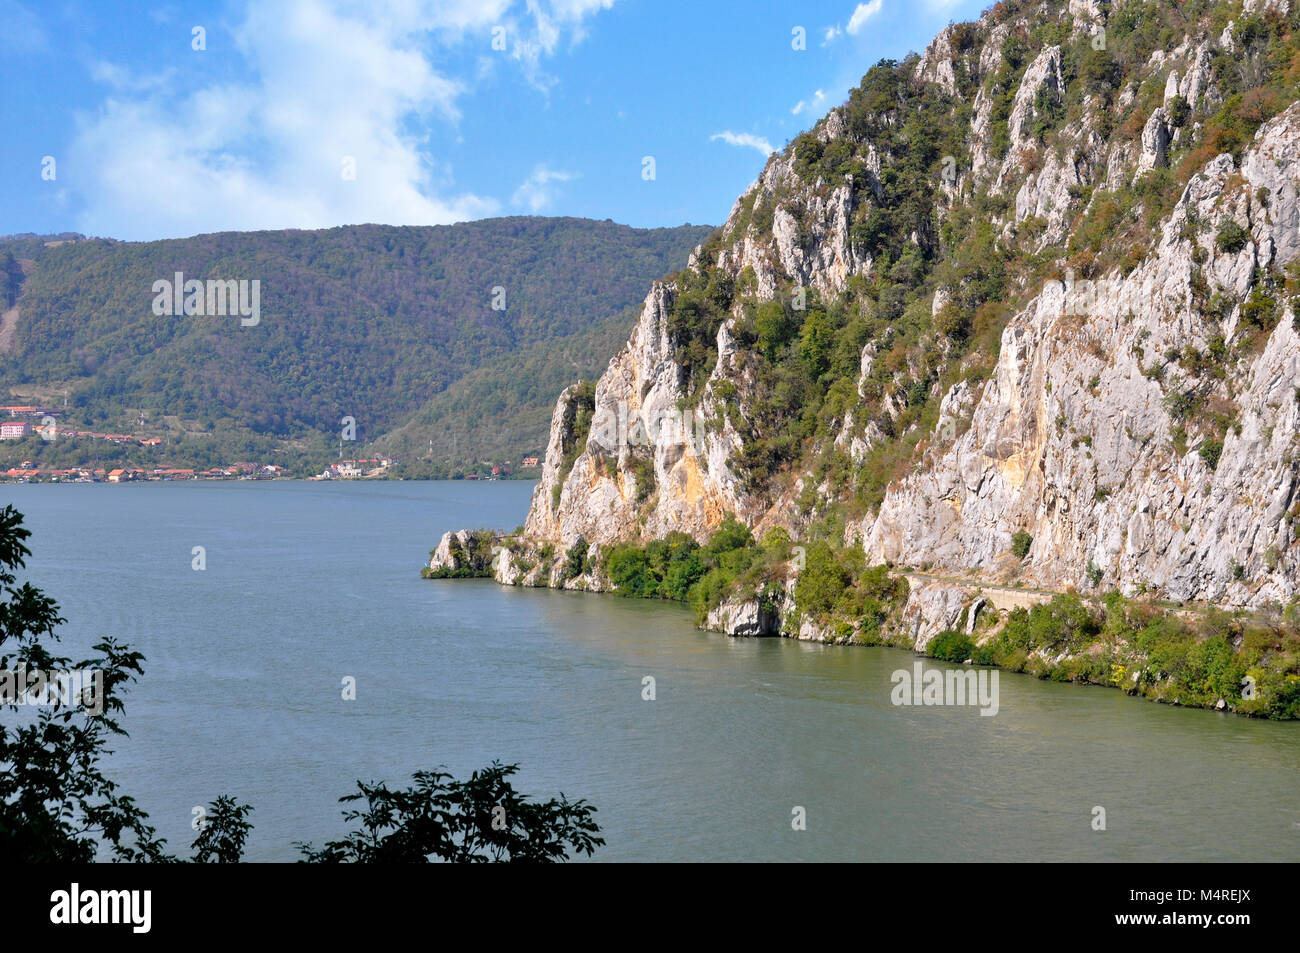 Danube river near the Serbian city of Donji Milanovac Stock Photo